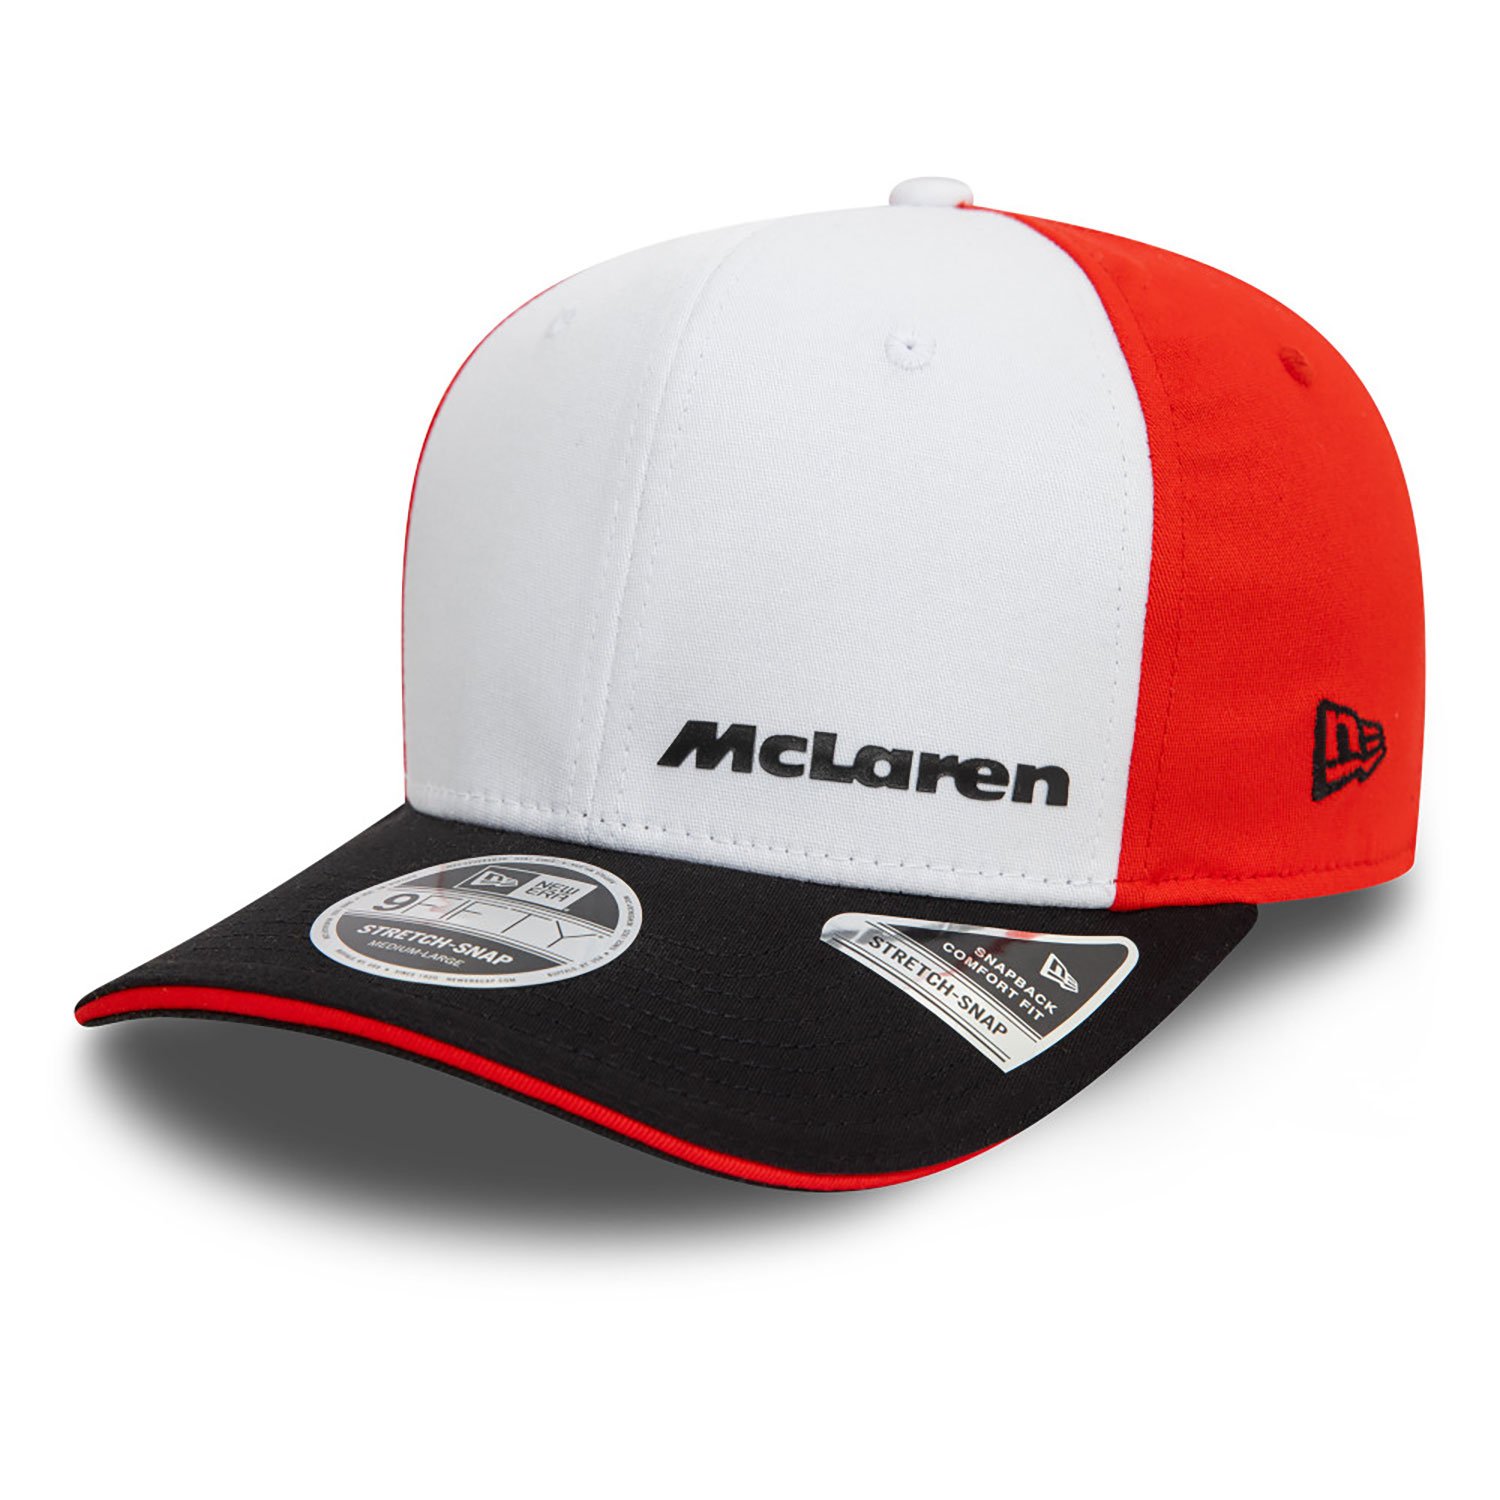 McLaren F1 New Era Cap "Monaco" - multicolor